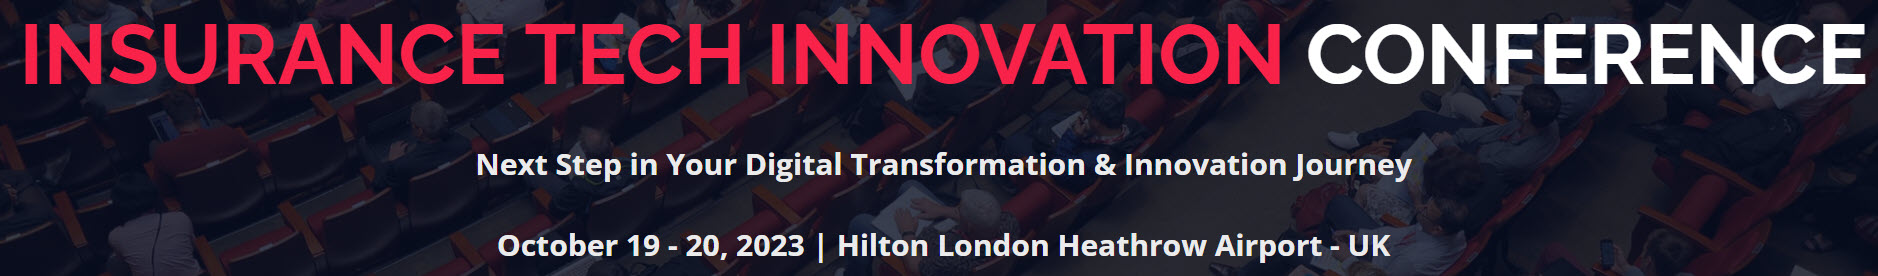 insurance technology innovation conference london 2023